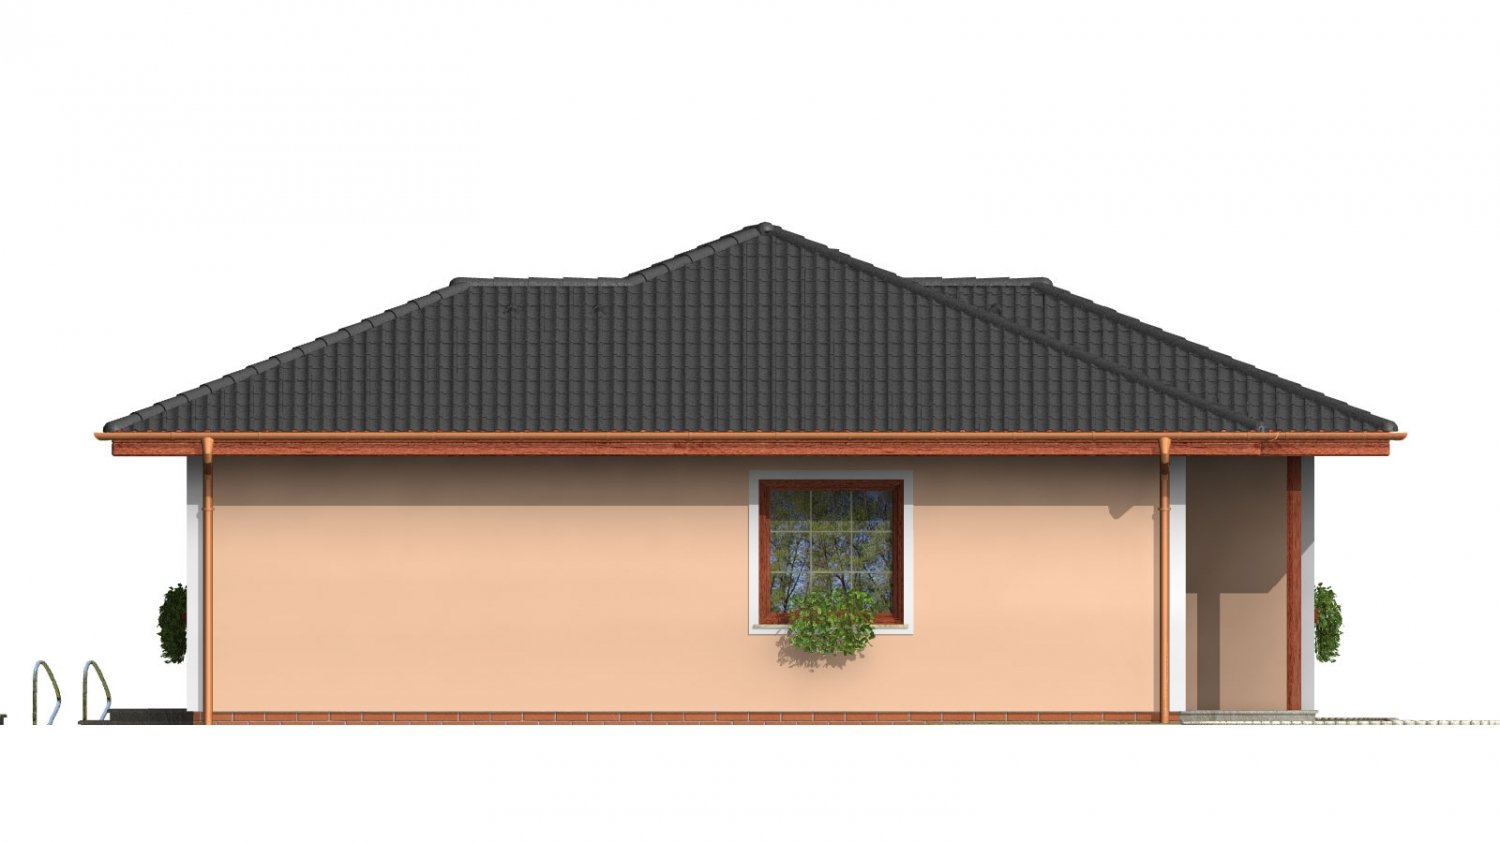 Pohľad 2. - Menší projekt domu s valbovou střechou.